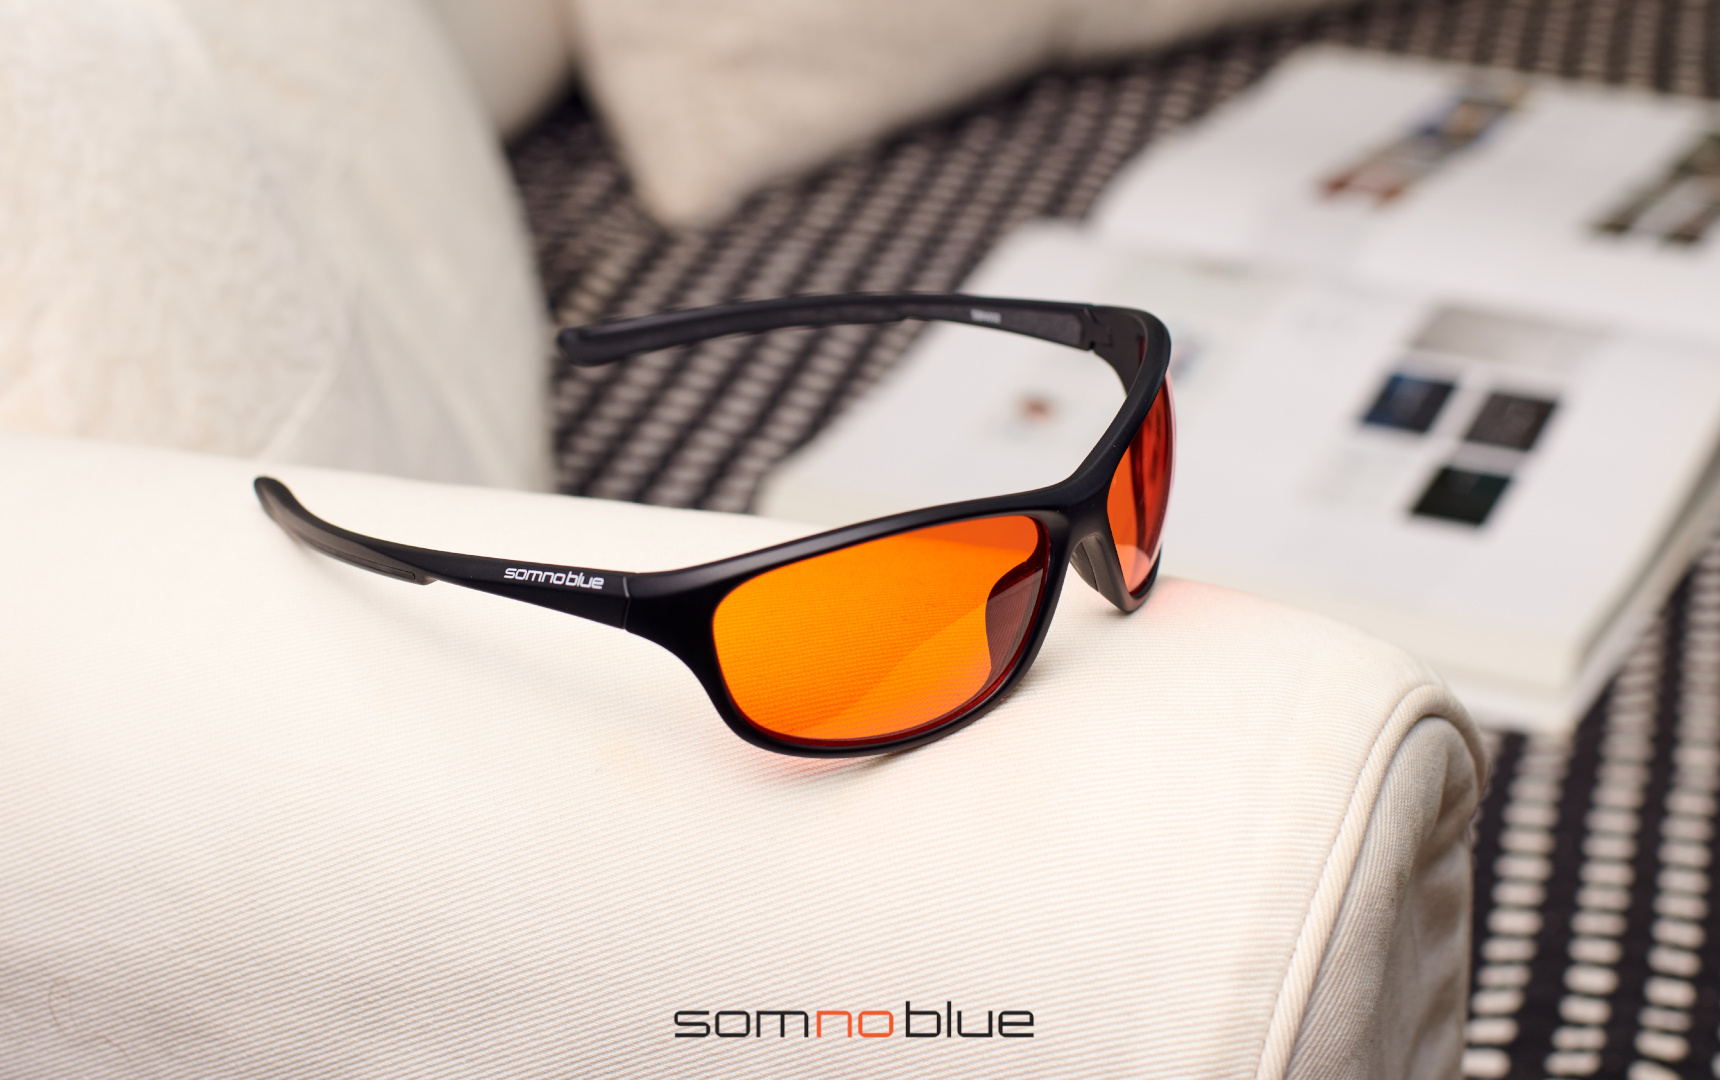 Somnoblue blue light blocking sleep glasses SB-3 PLus